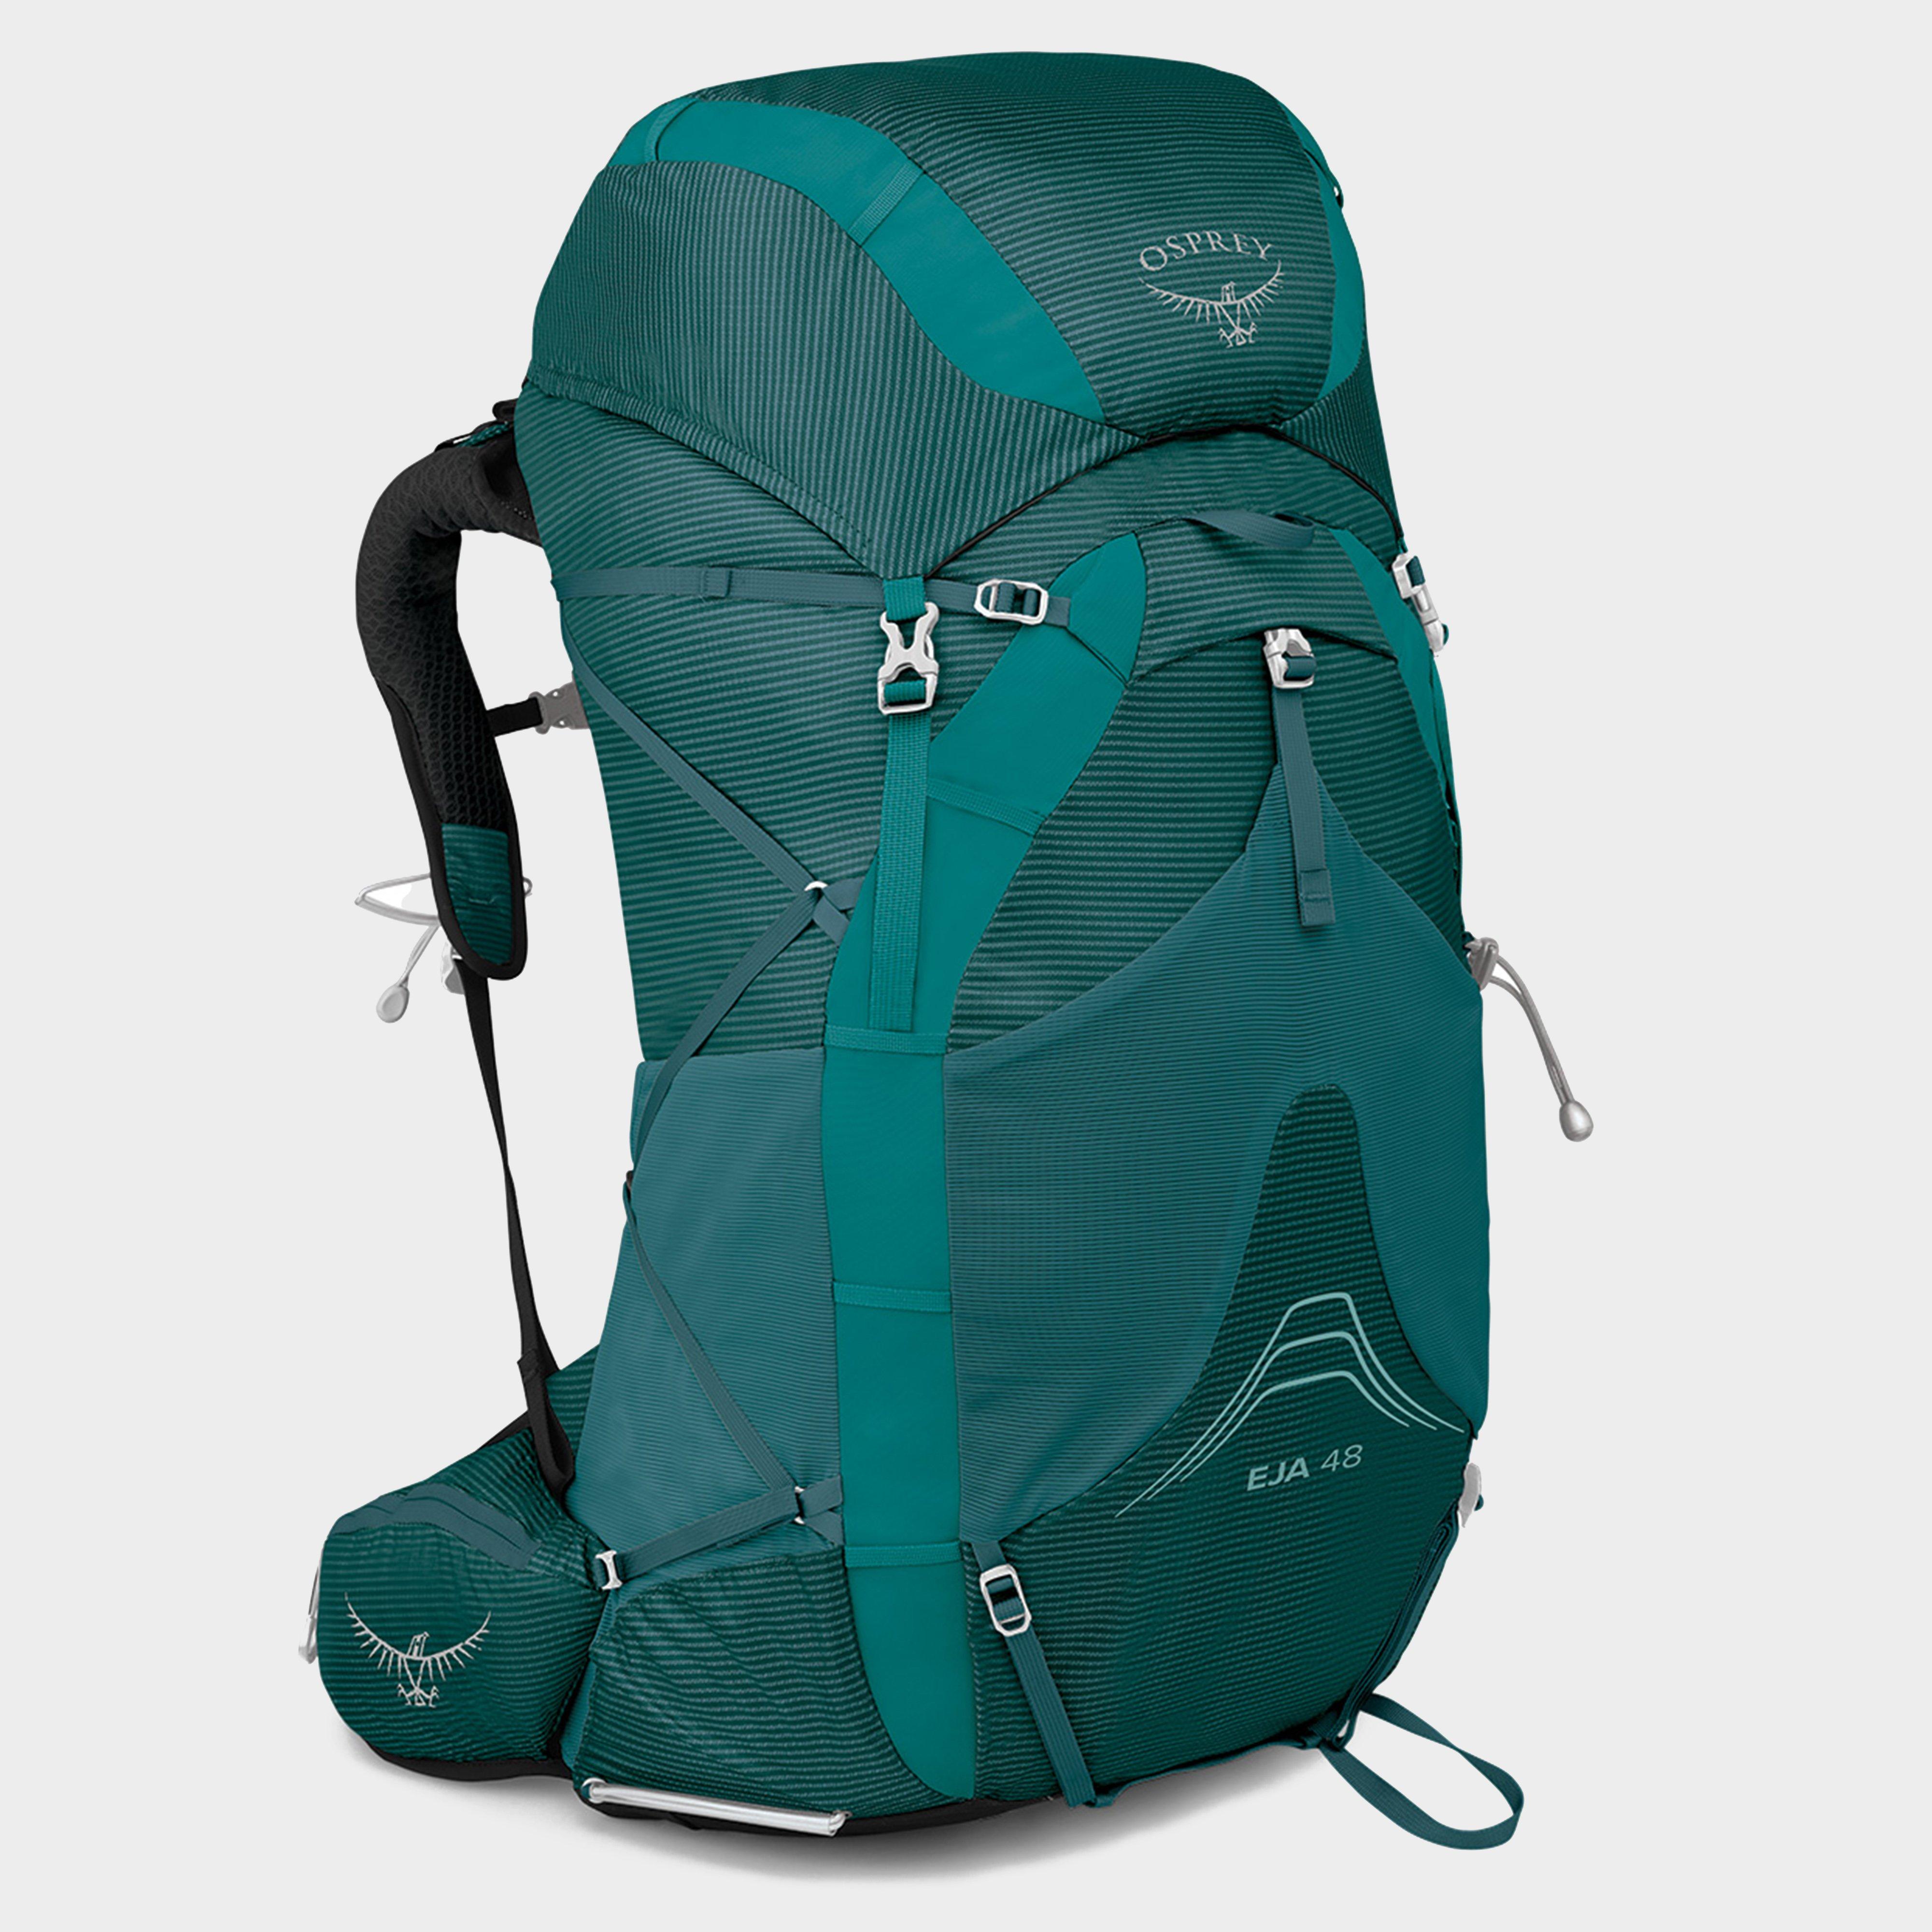 Osprey Eja Ii 48l Backpack - Green/green  Green/green